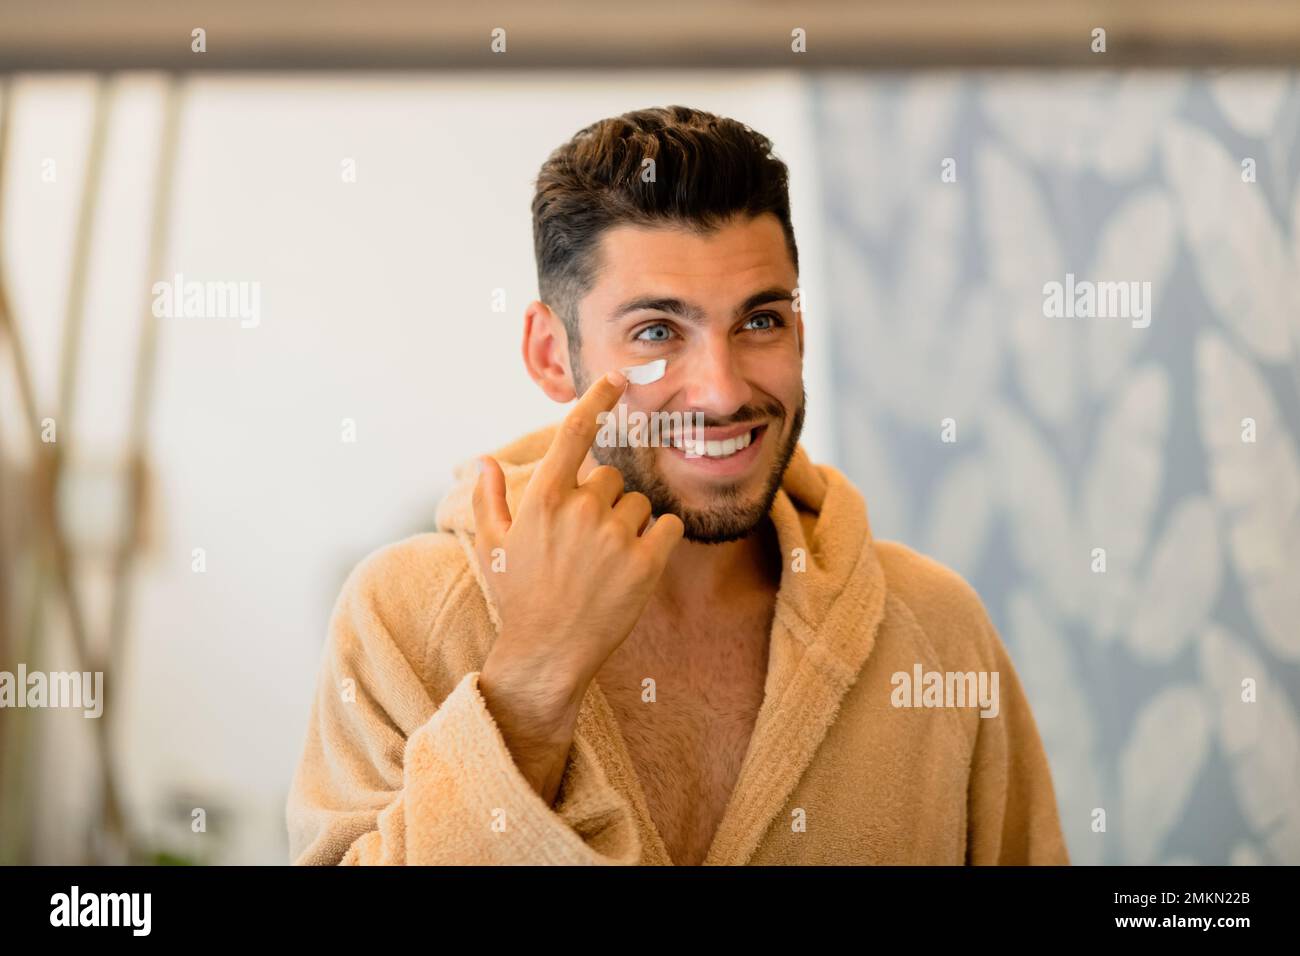 Hombre feliz en albornoz sonriendo y aplicando crema en la mejilla mientras se mira en el espejo durante la rutina de cuidado de la piel en casa Foto de stock